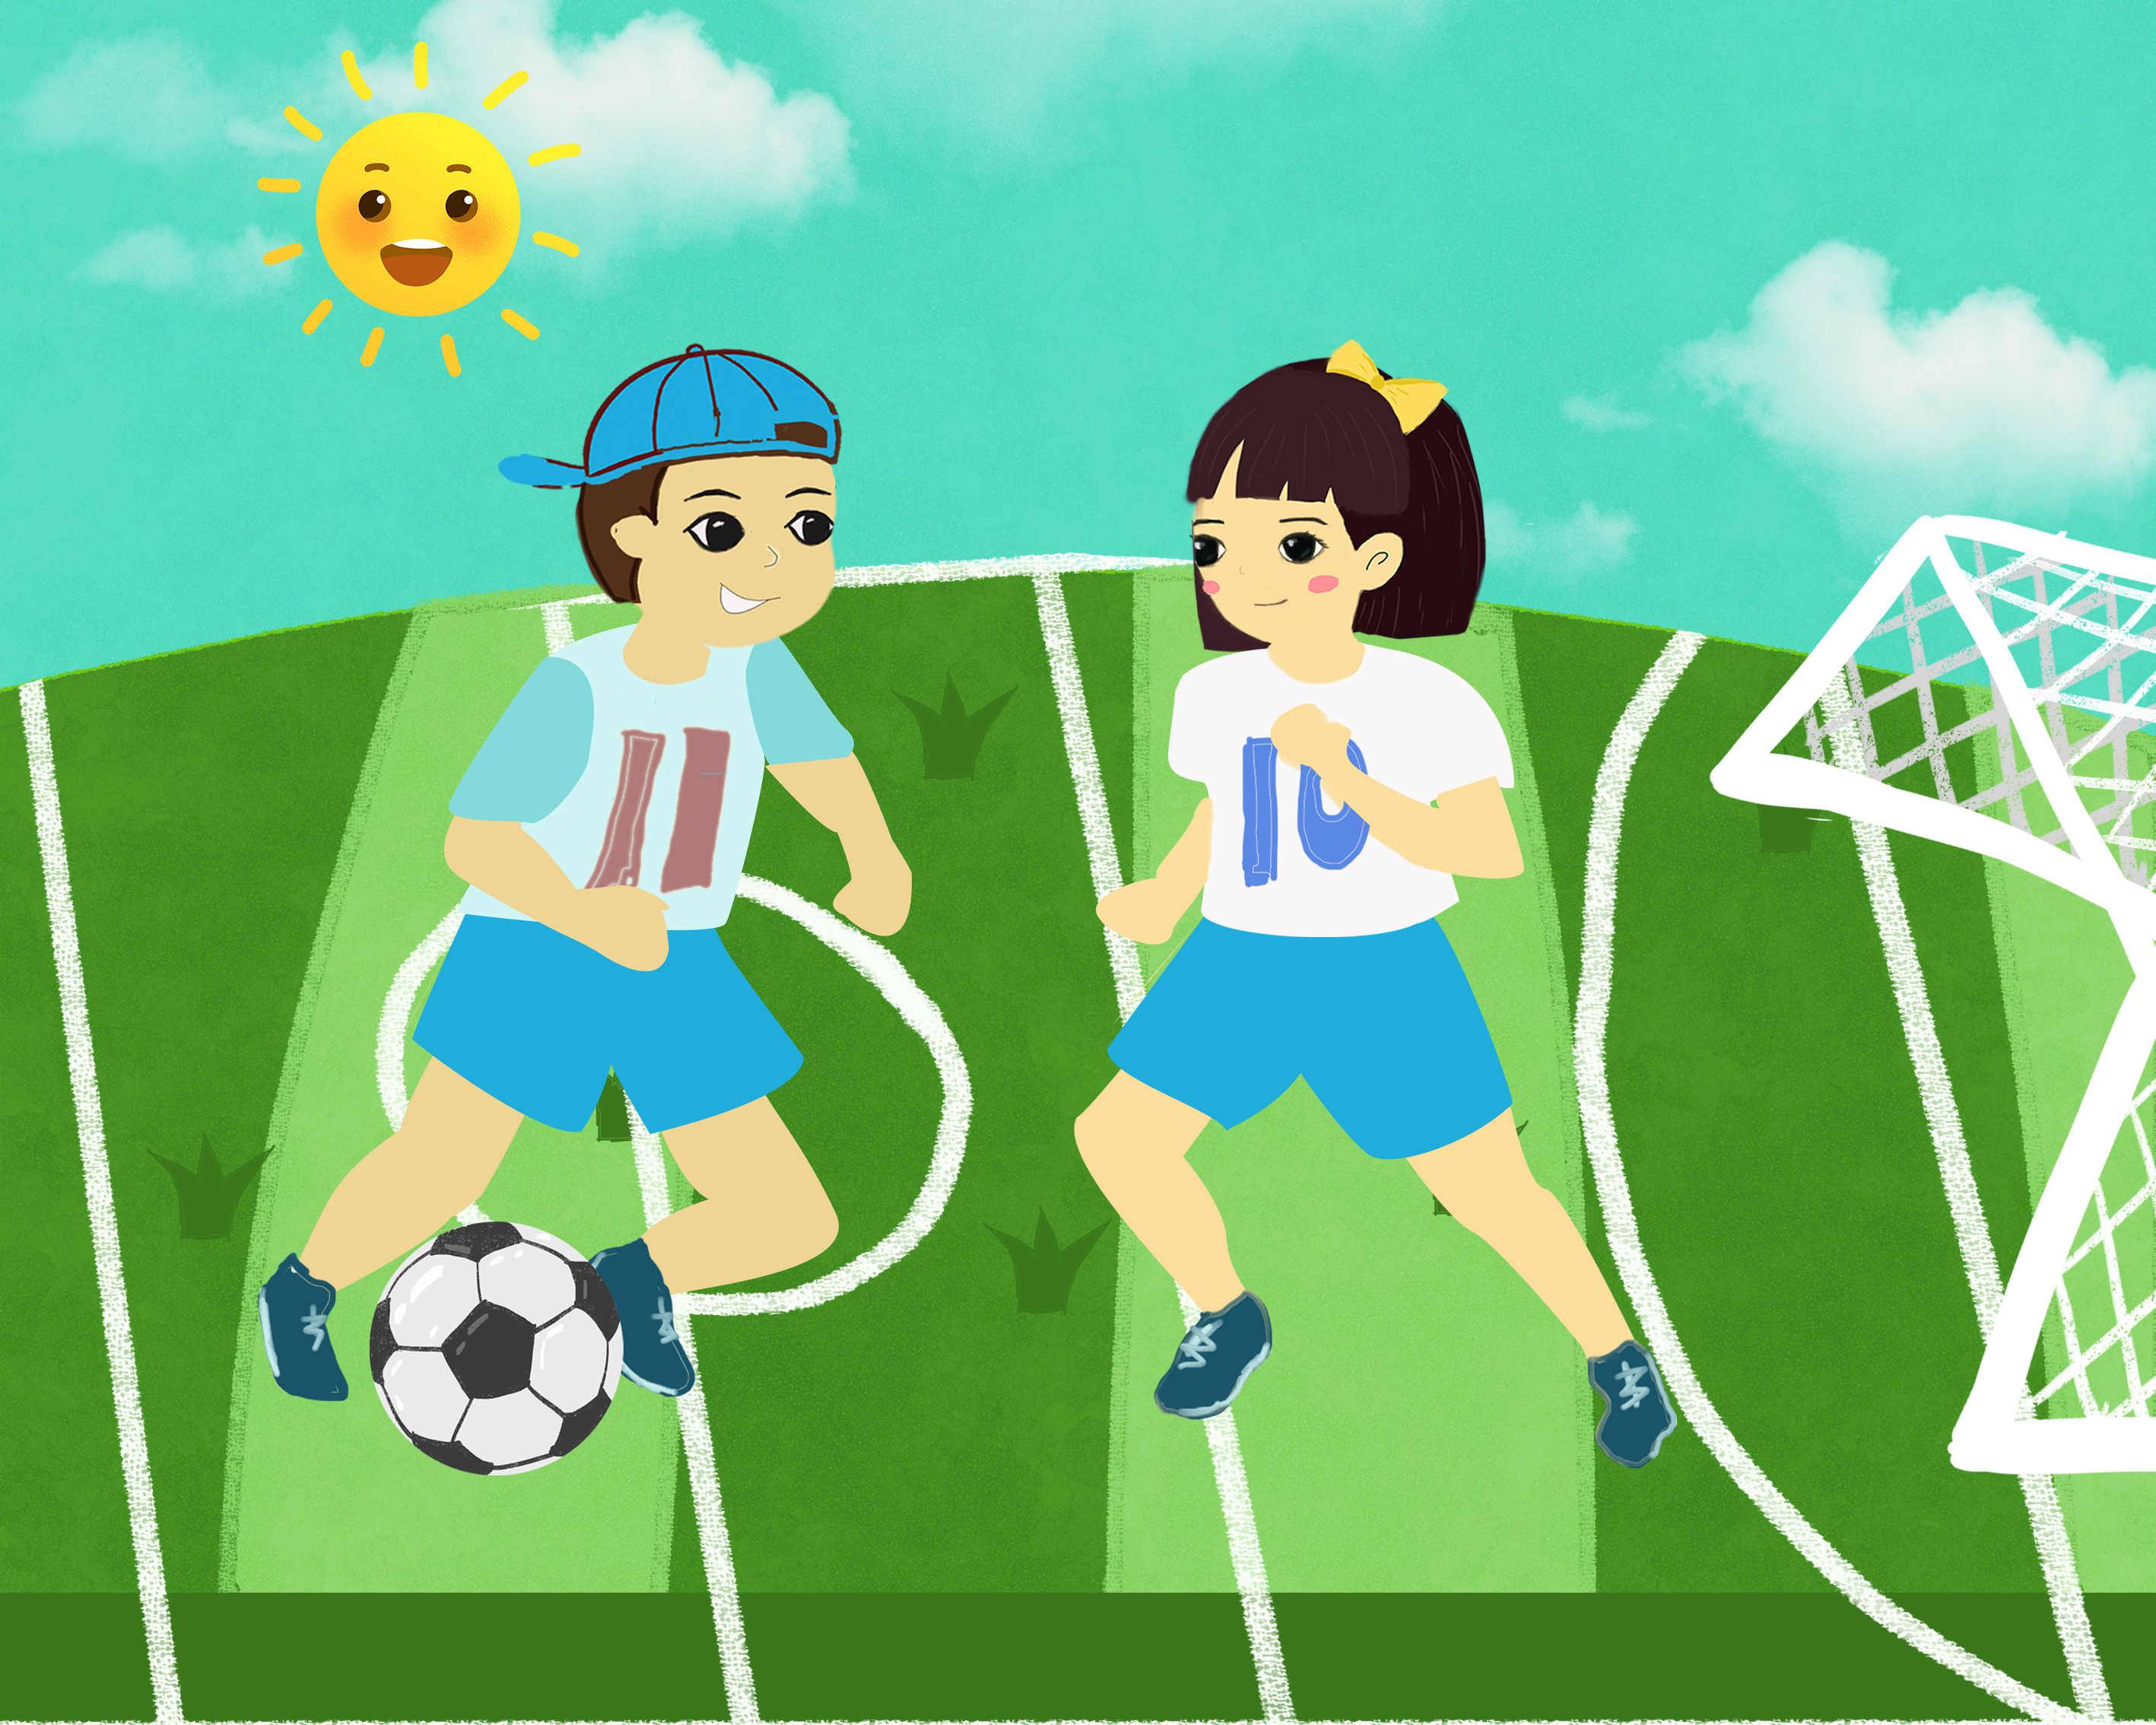 足球运动踢球的小朋友图片素材免费下载 - 觅知网